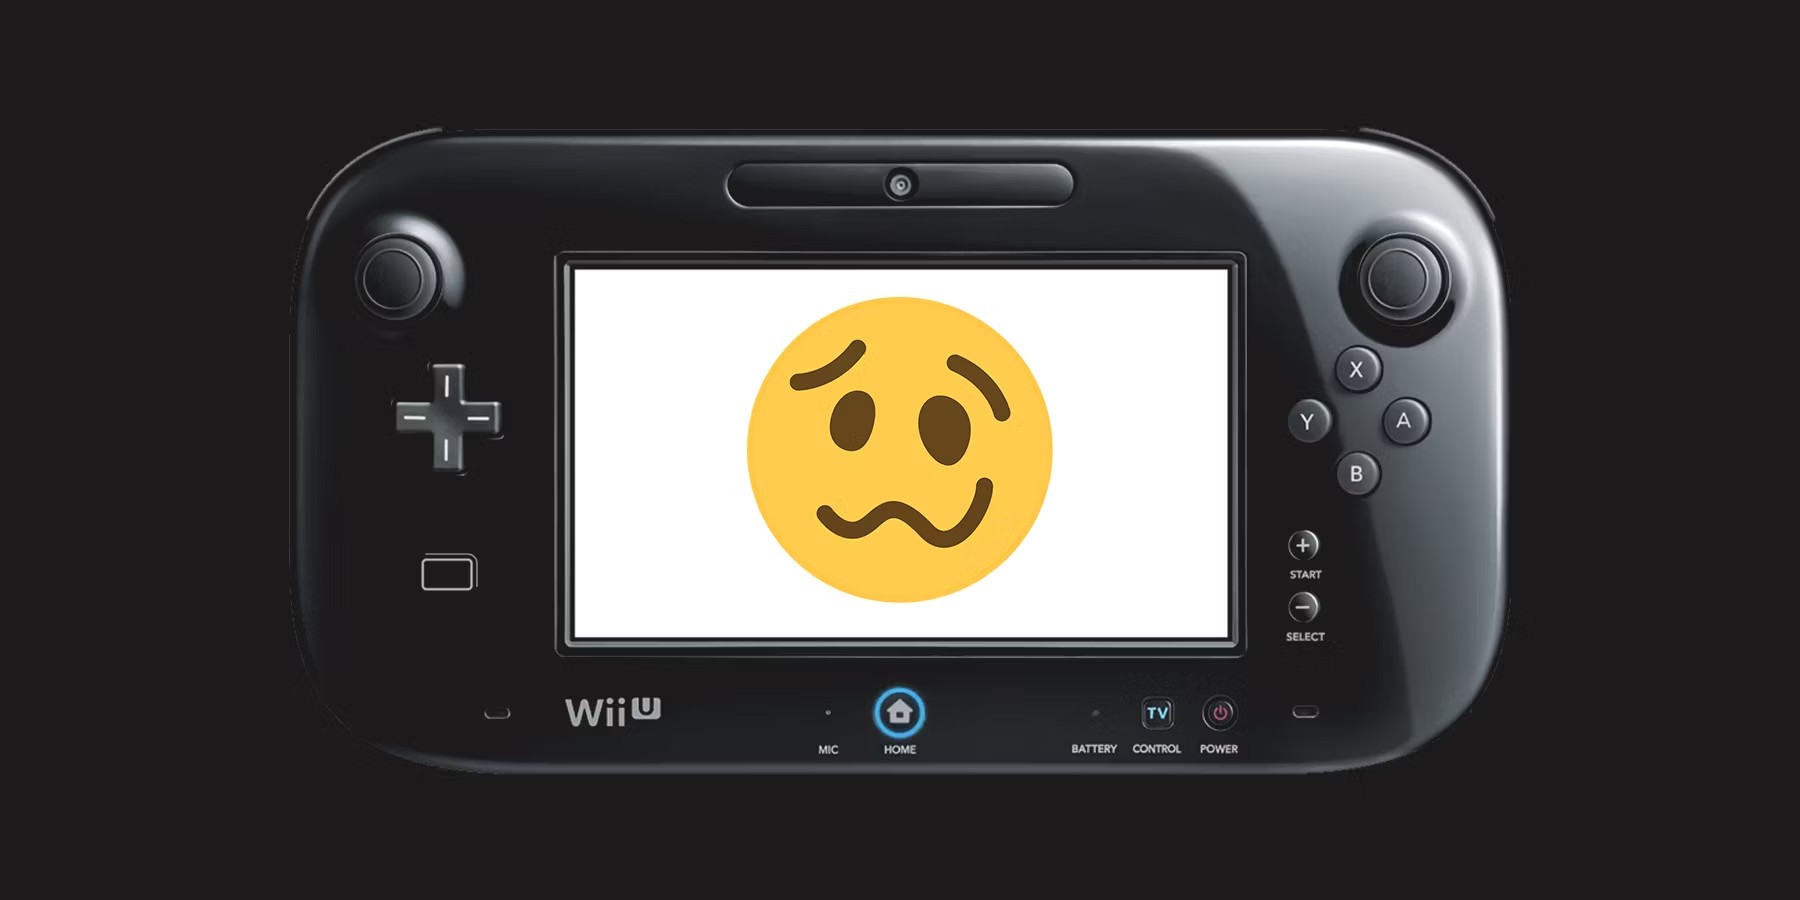 Como comprar e instalar jogos do Nintendo Wii no Wii U